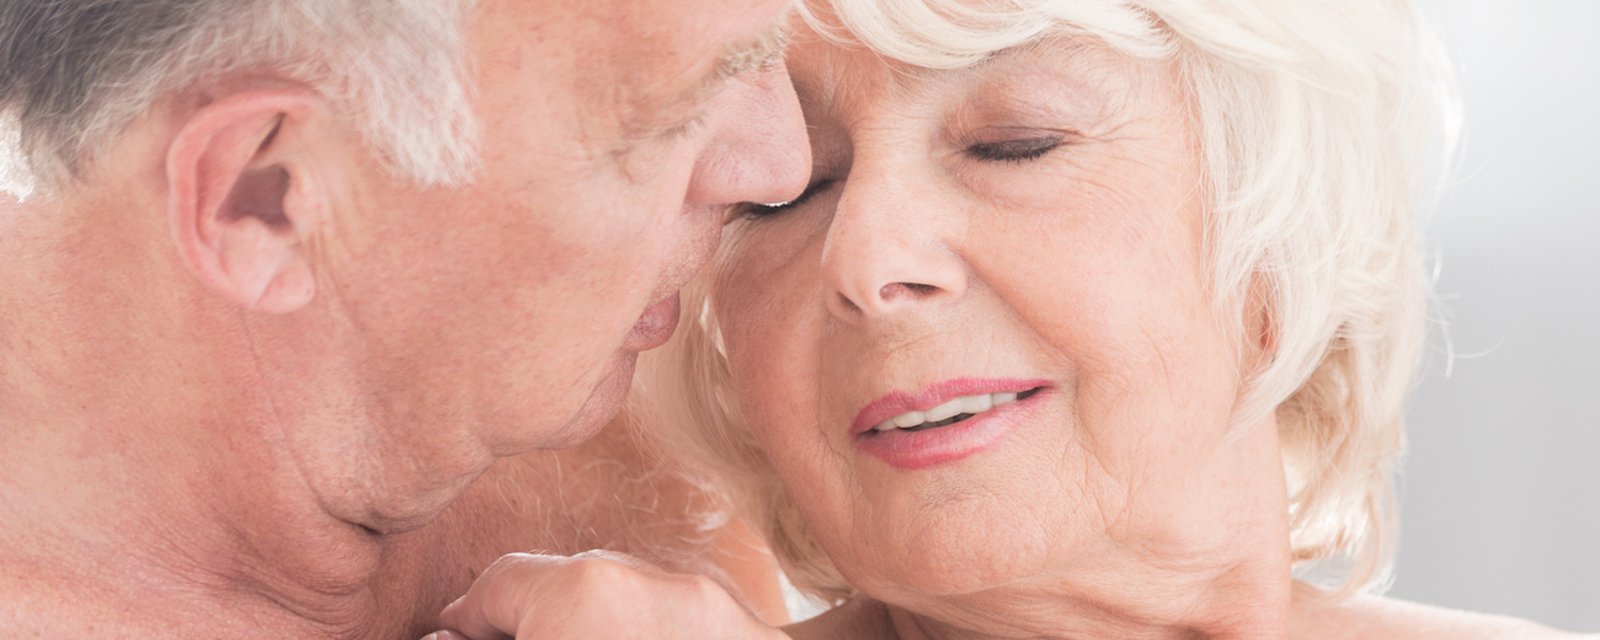 Selon une nouvelle étude, le sexe rend vraiment votre vie meilleure, même lorsqu’on vieillit